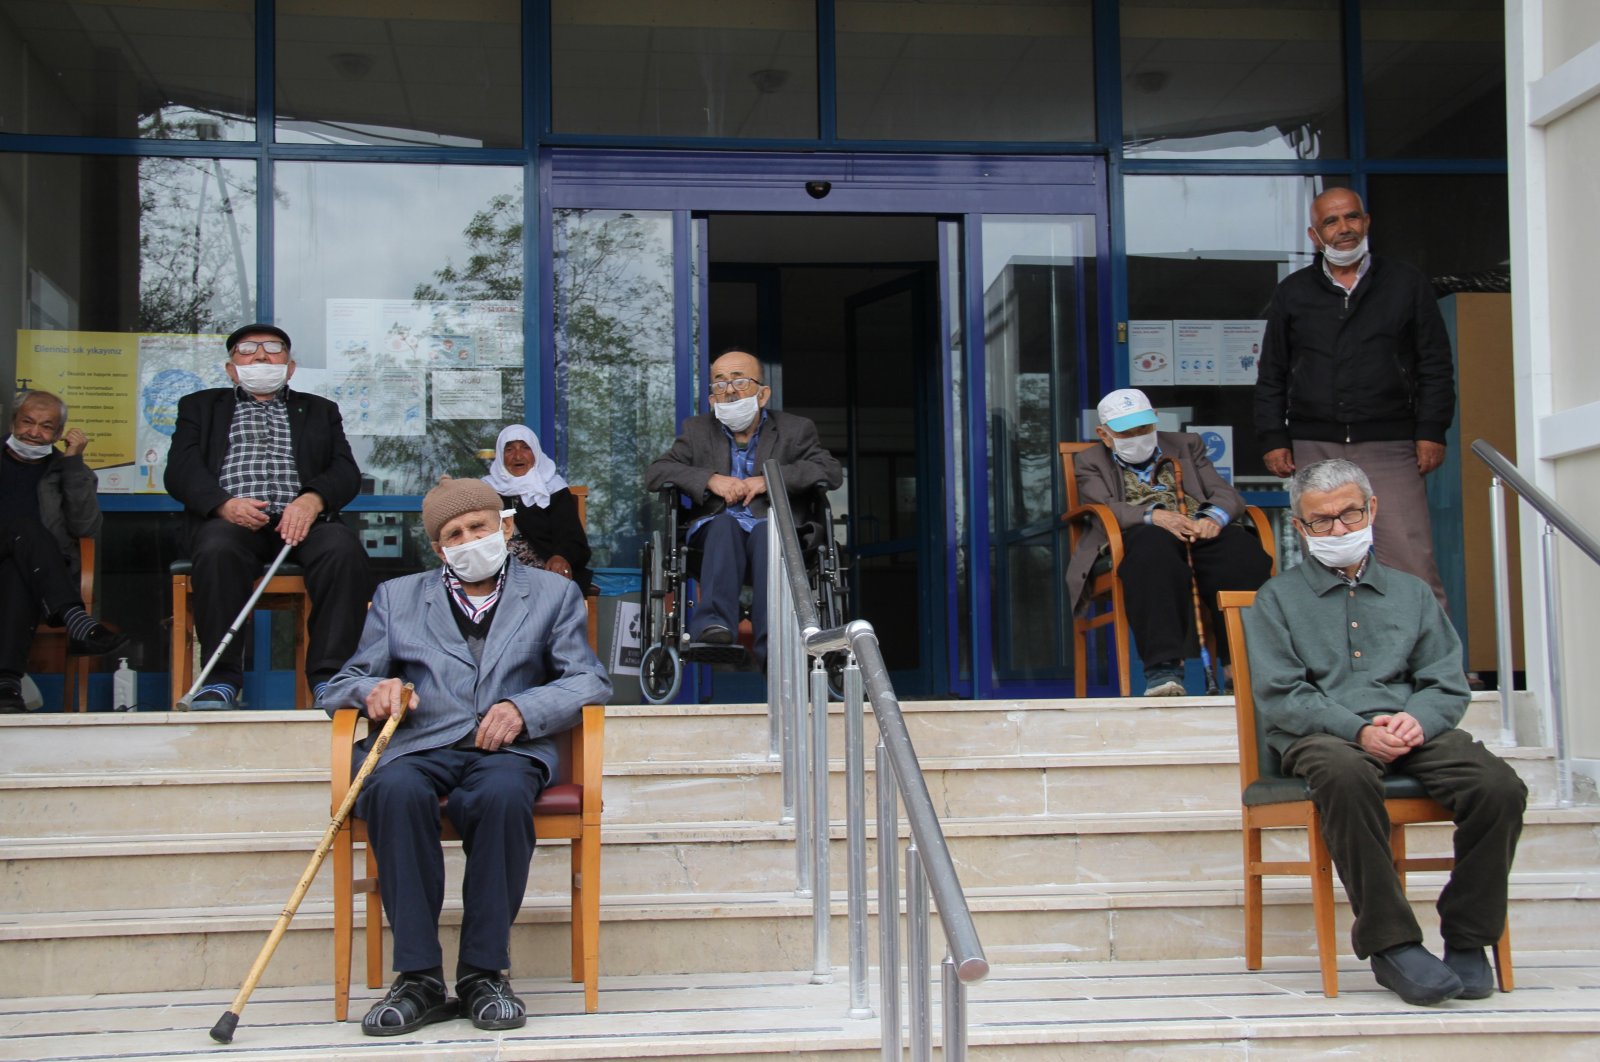 Elderly citizens sit in front of a nursing home in Karabük, northern Turkey, April 27, 2020. (İHA PHOTO)